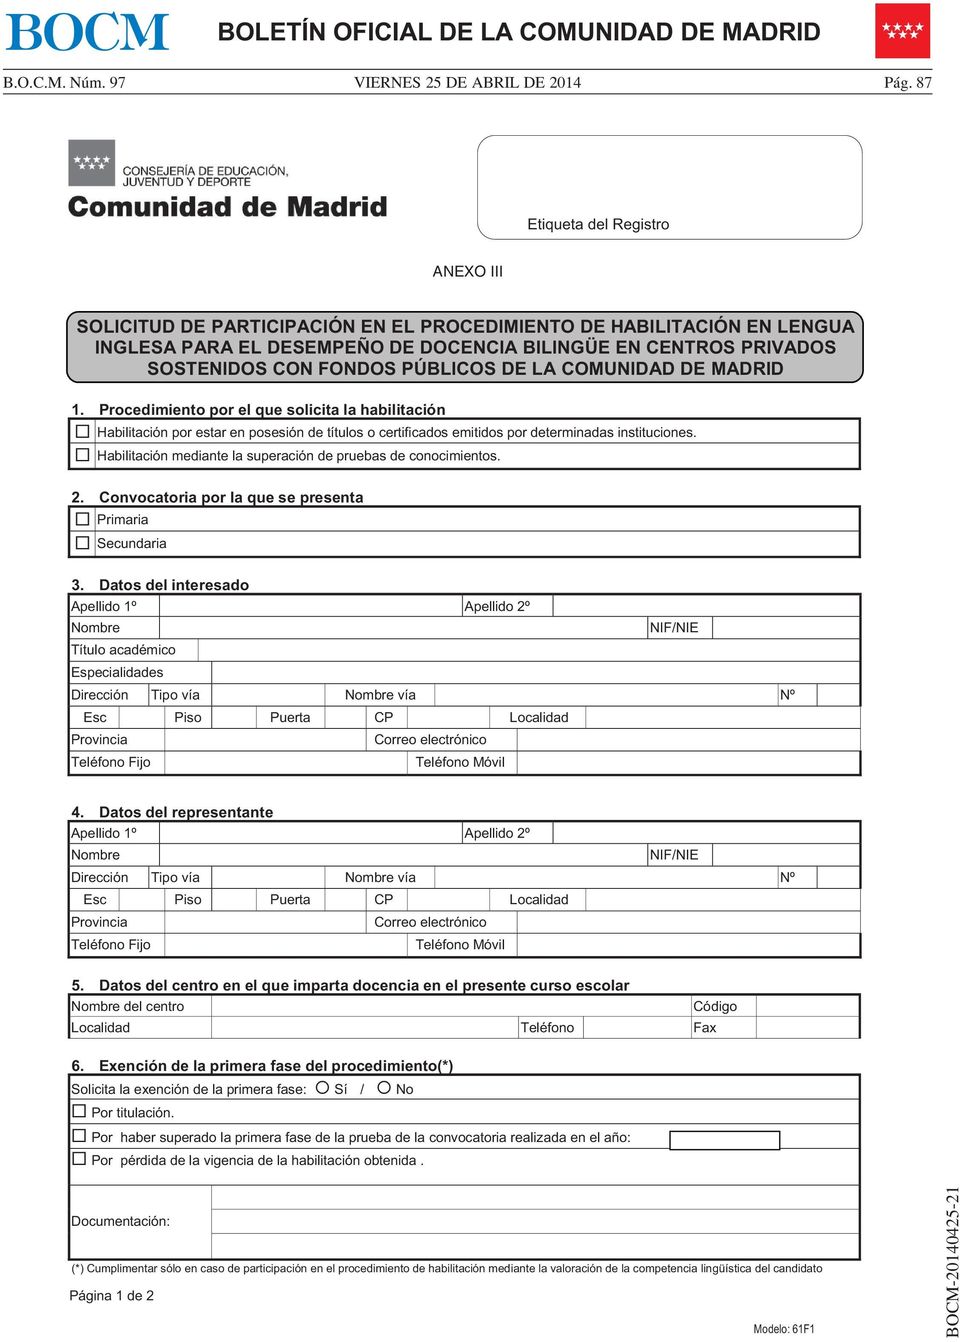 PÚBLICOS DE LA COMUNIDAD DE MADRID 1. Procedimiento por el que solicita la habilitación Habilitación por estar en posesión de títulos o certificados emitidos por determinadas instituciones.